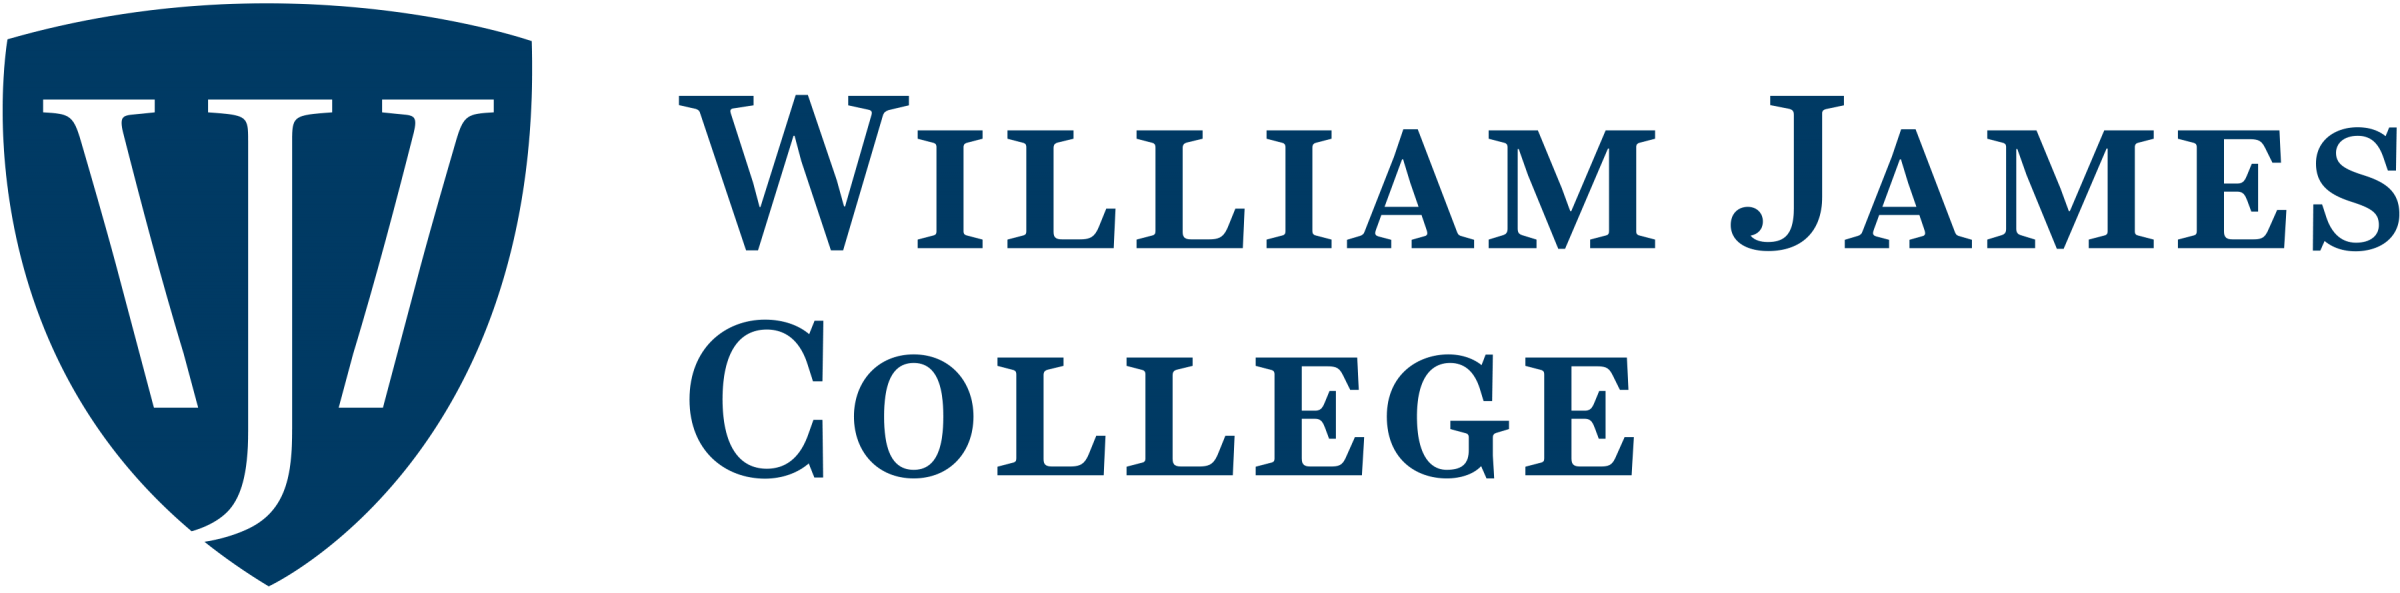 William James College logo